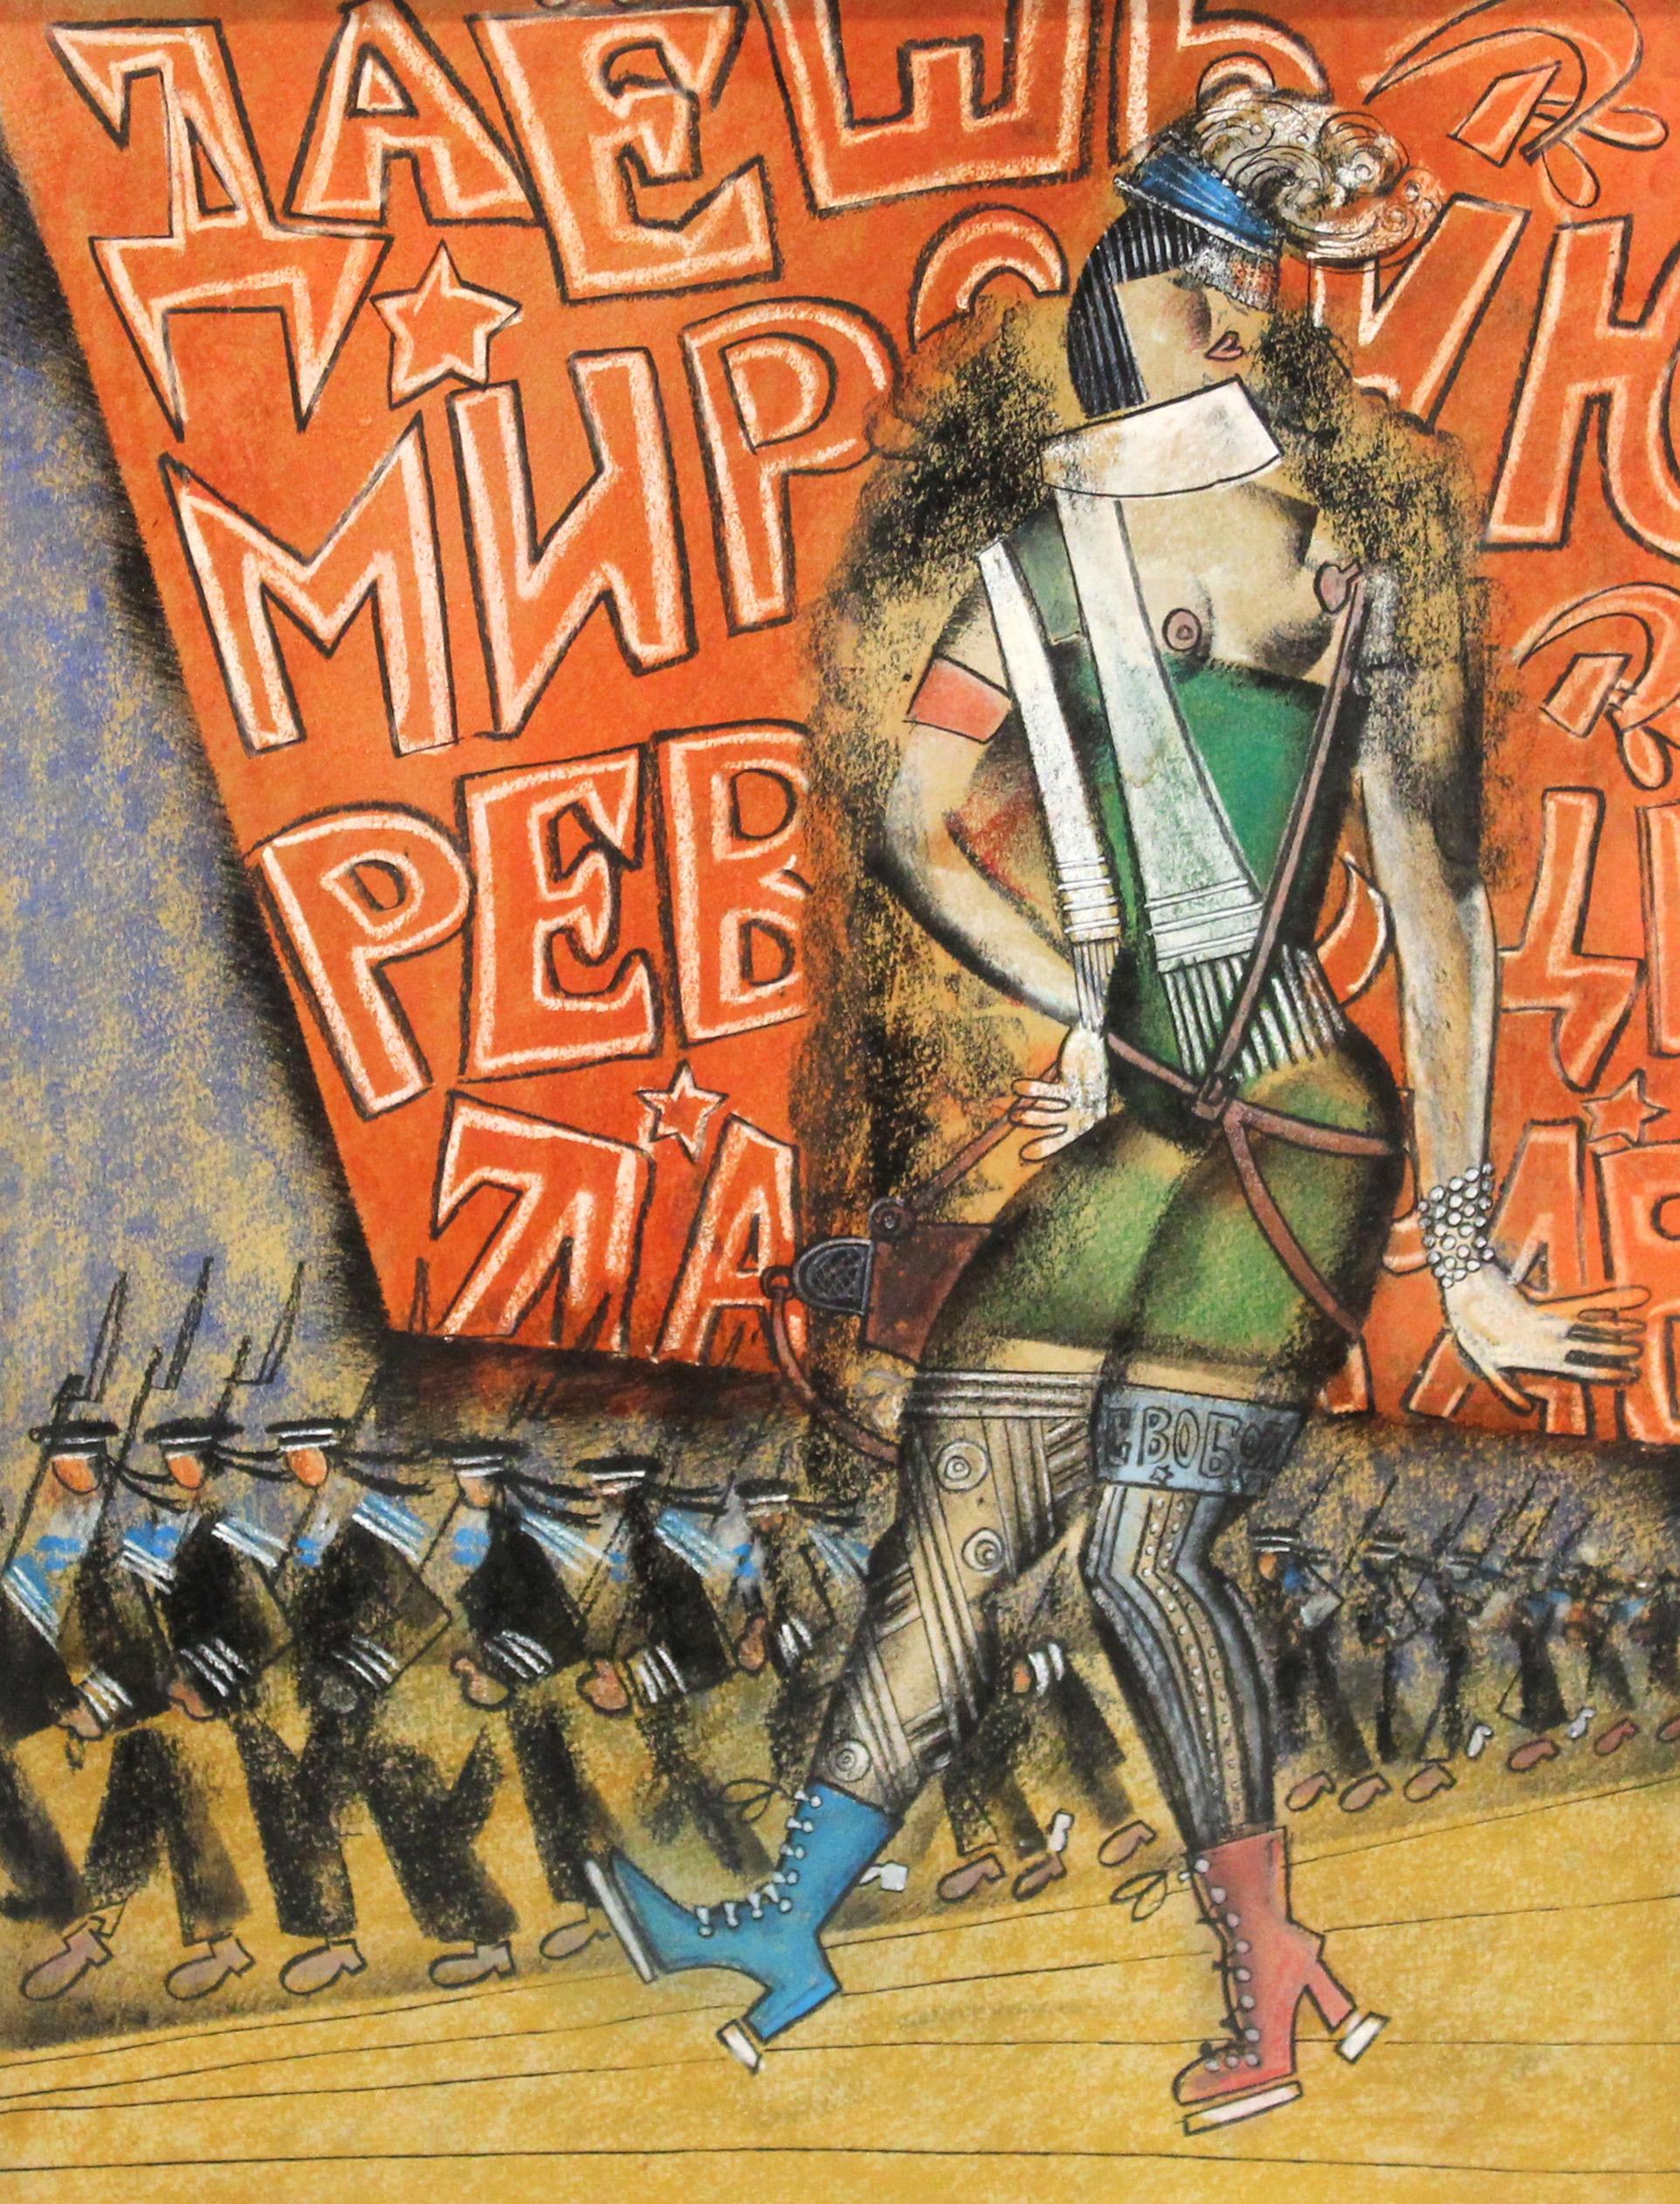 Vladimir Lebedev (1891 - 1967) Avant-garde russe, œuvre mixte sur papier (encre, gouache, crayon) représentant une ouvrière semi-nue paradant devant un groupe de marins en marche. La pièce comprend des éléments visibles de la propagande bolchevique